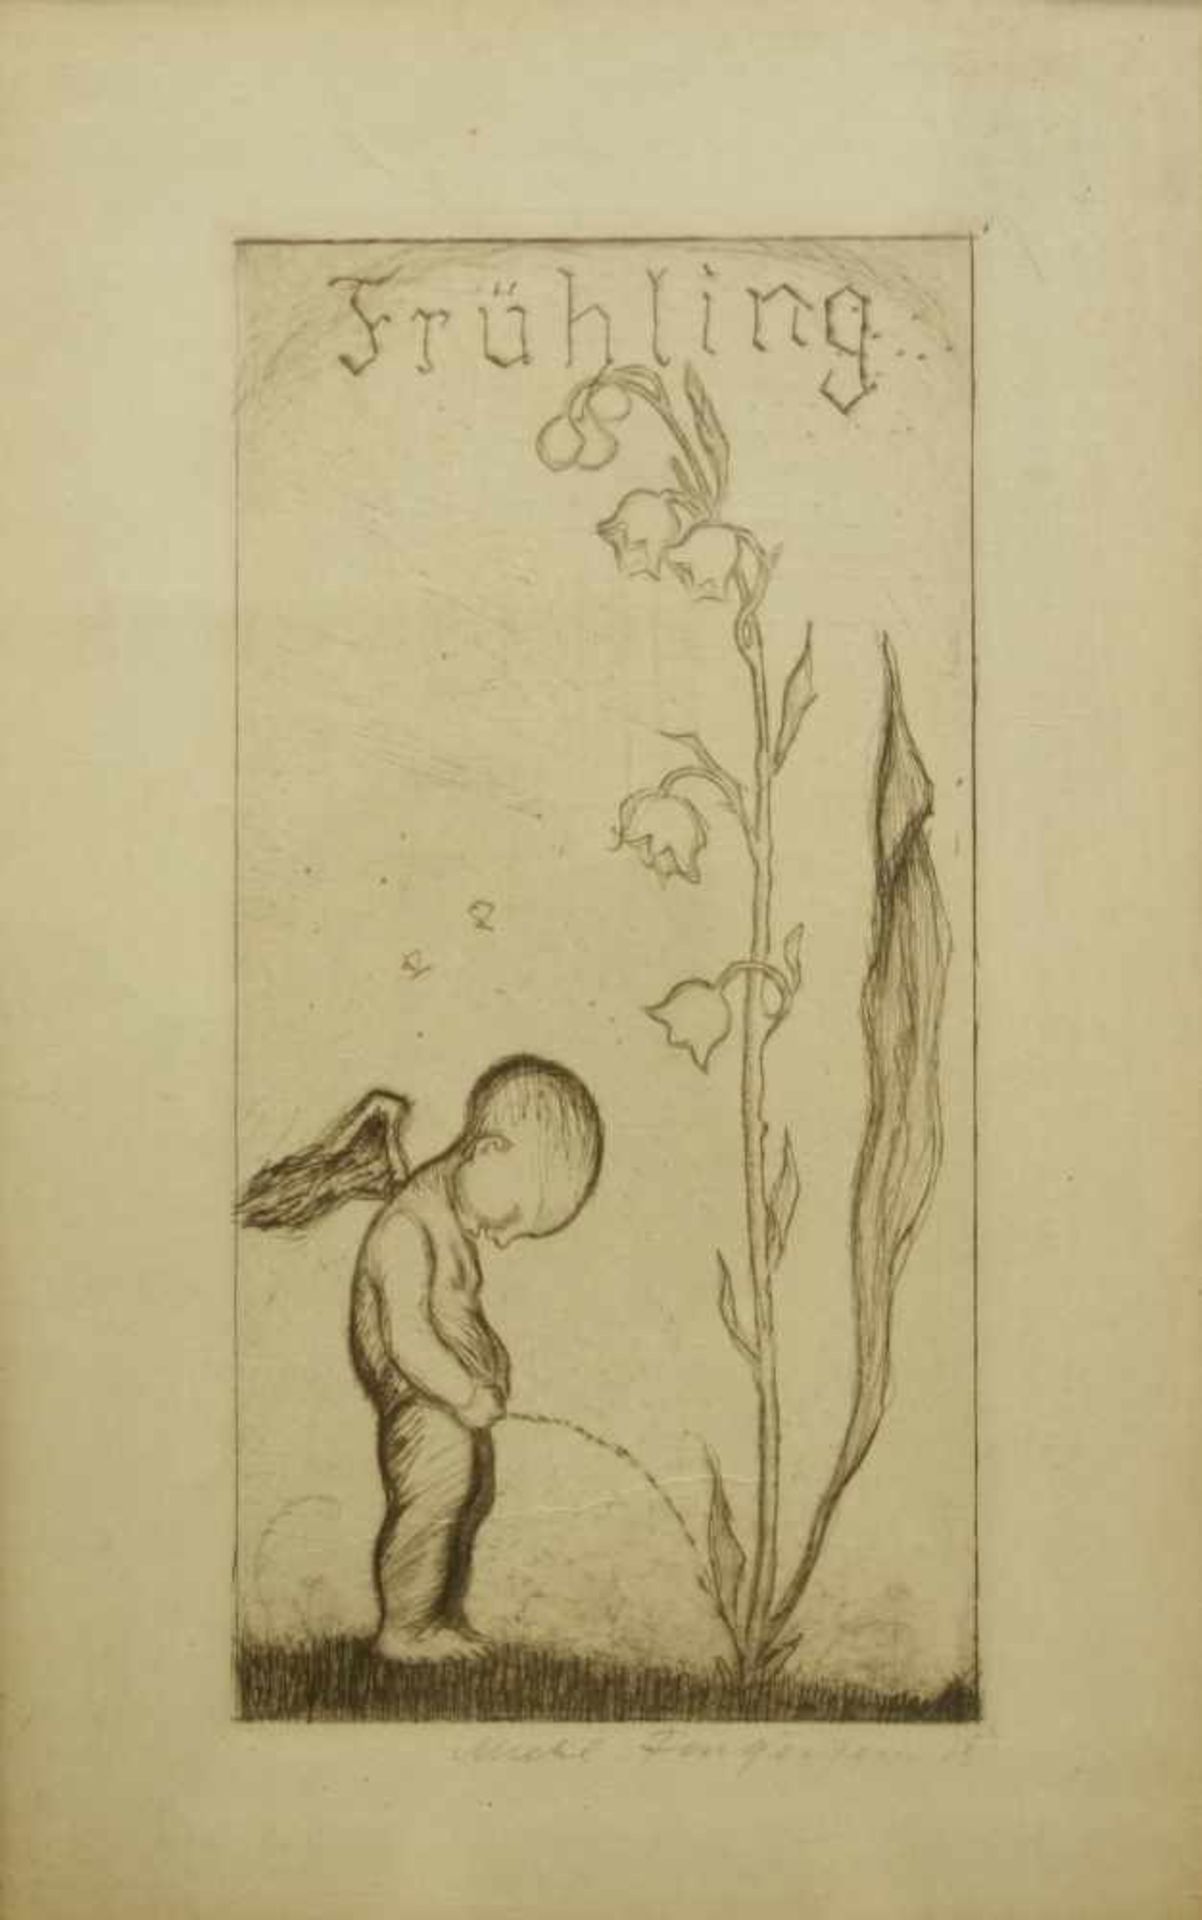 Jugendstil- Radierung "Frühling", um 1910/20stehender Cupido "wässert" ein Maiglöckchen,darunter